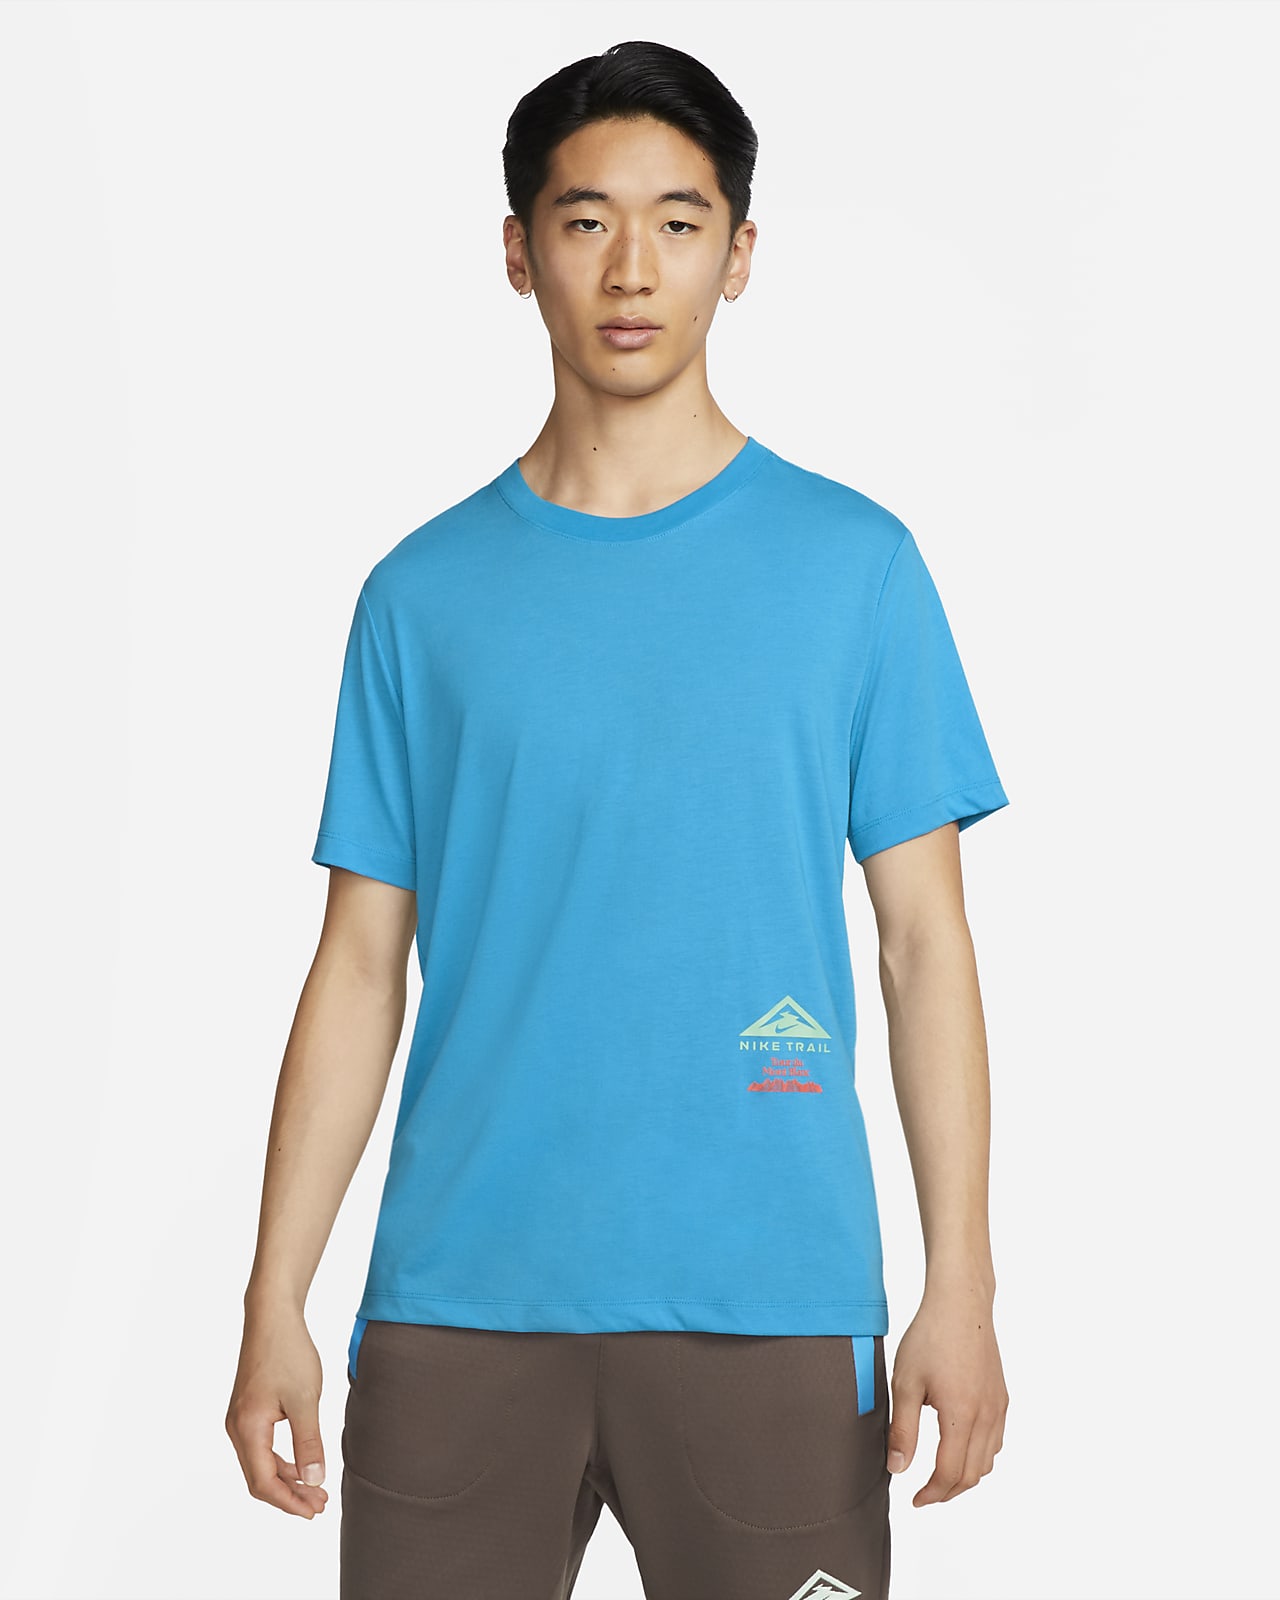 Nike Dri-FIT Trail T-Shirt